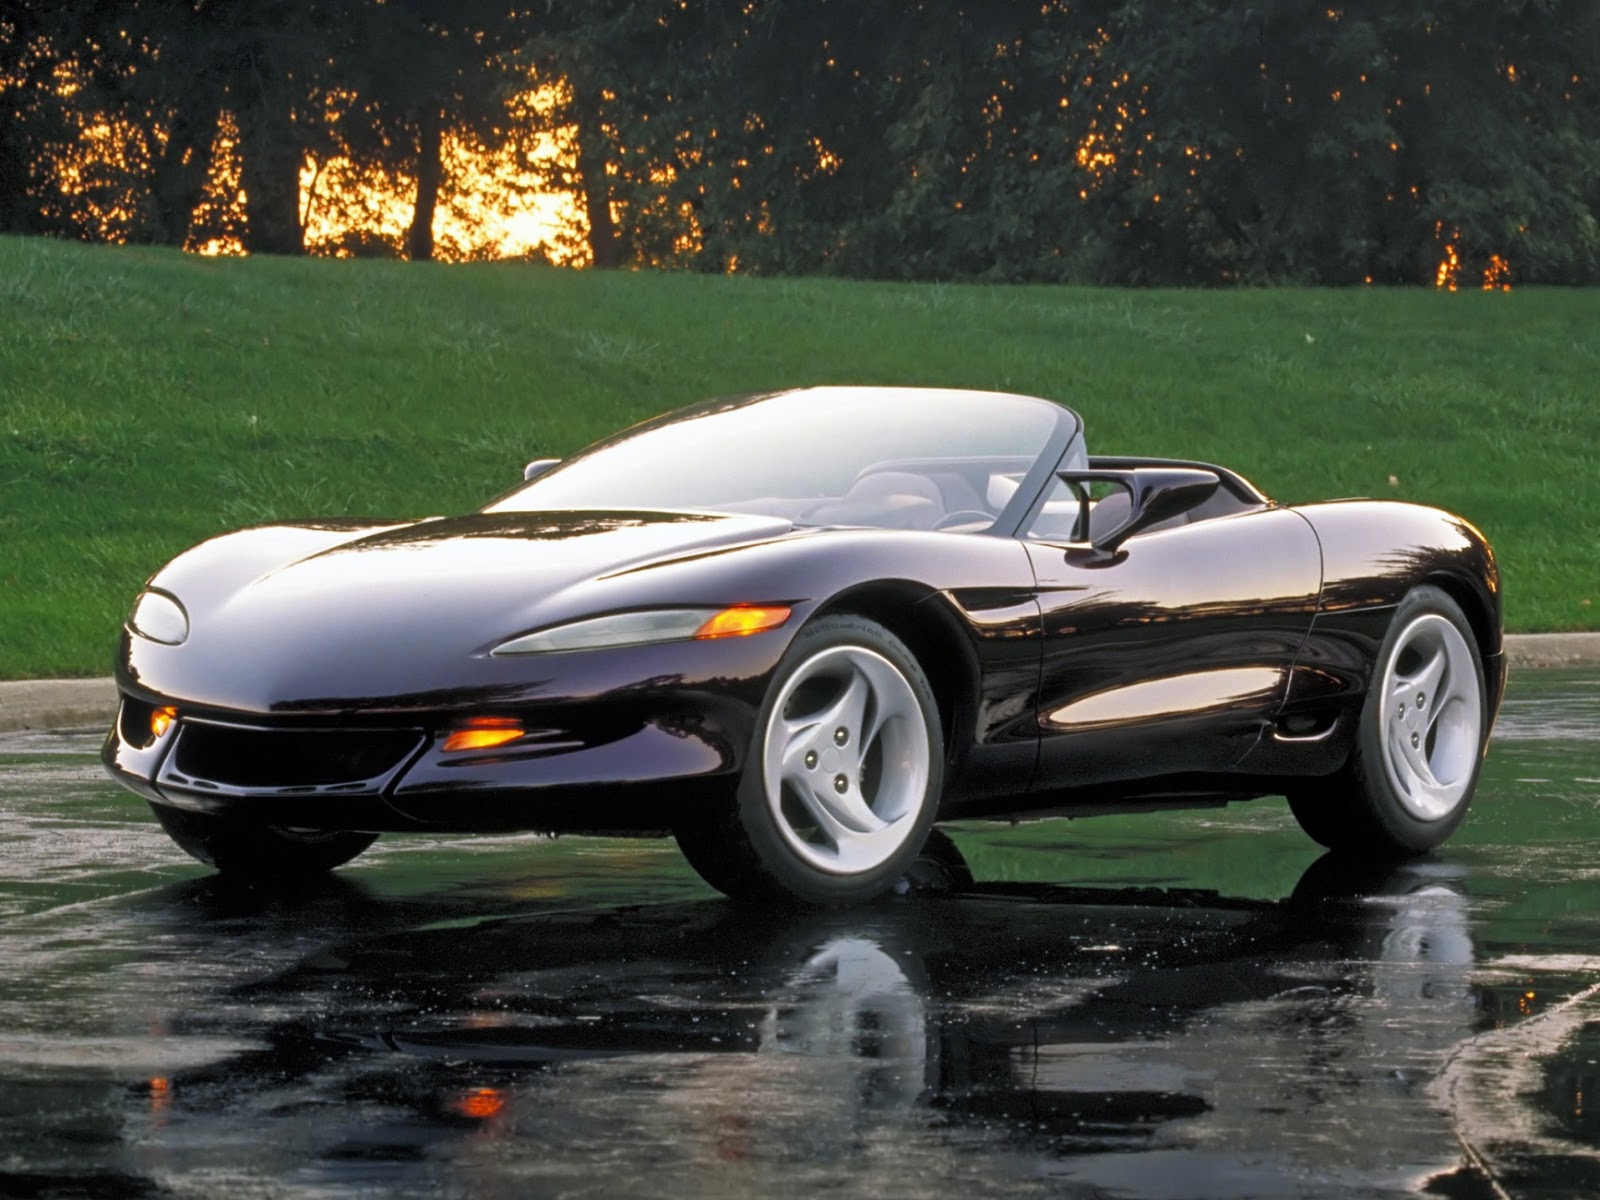 http://1.bp.blogspot.com/-eGuNHsKIKdw/UPjtBgxmY0I/AAAAAAAANpY/xgKg9iVaeAo/s1600/1991+Chevrolet+Corvette+Stingray+III+Concept.jpg